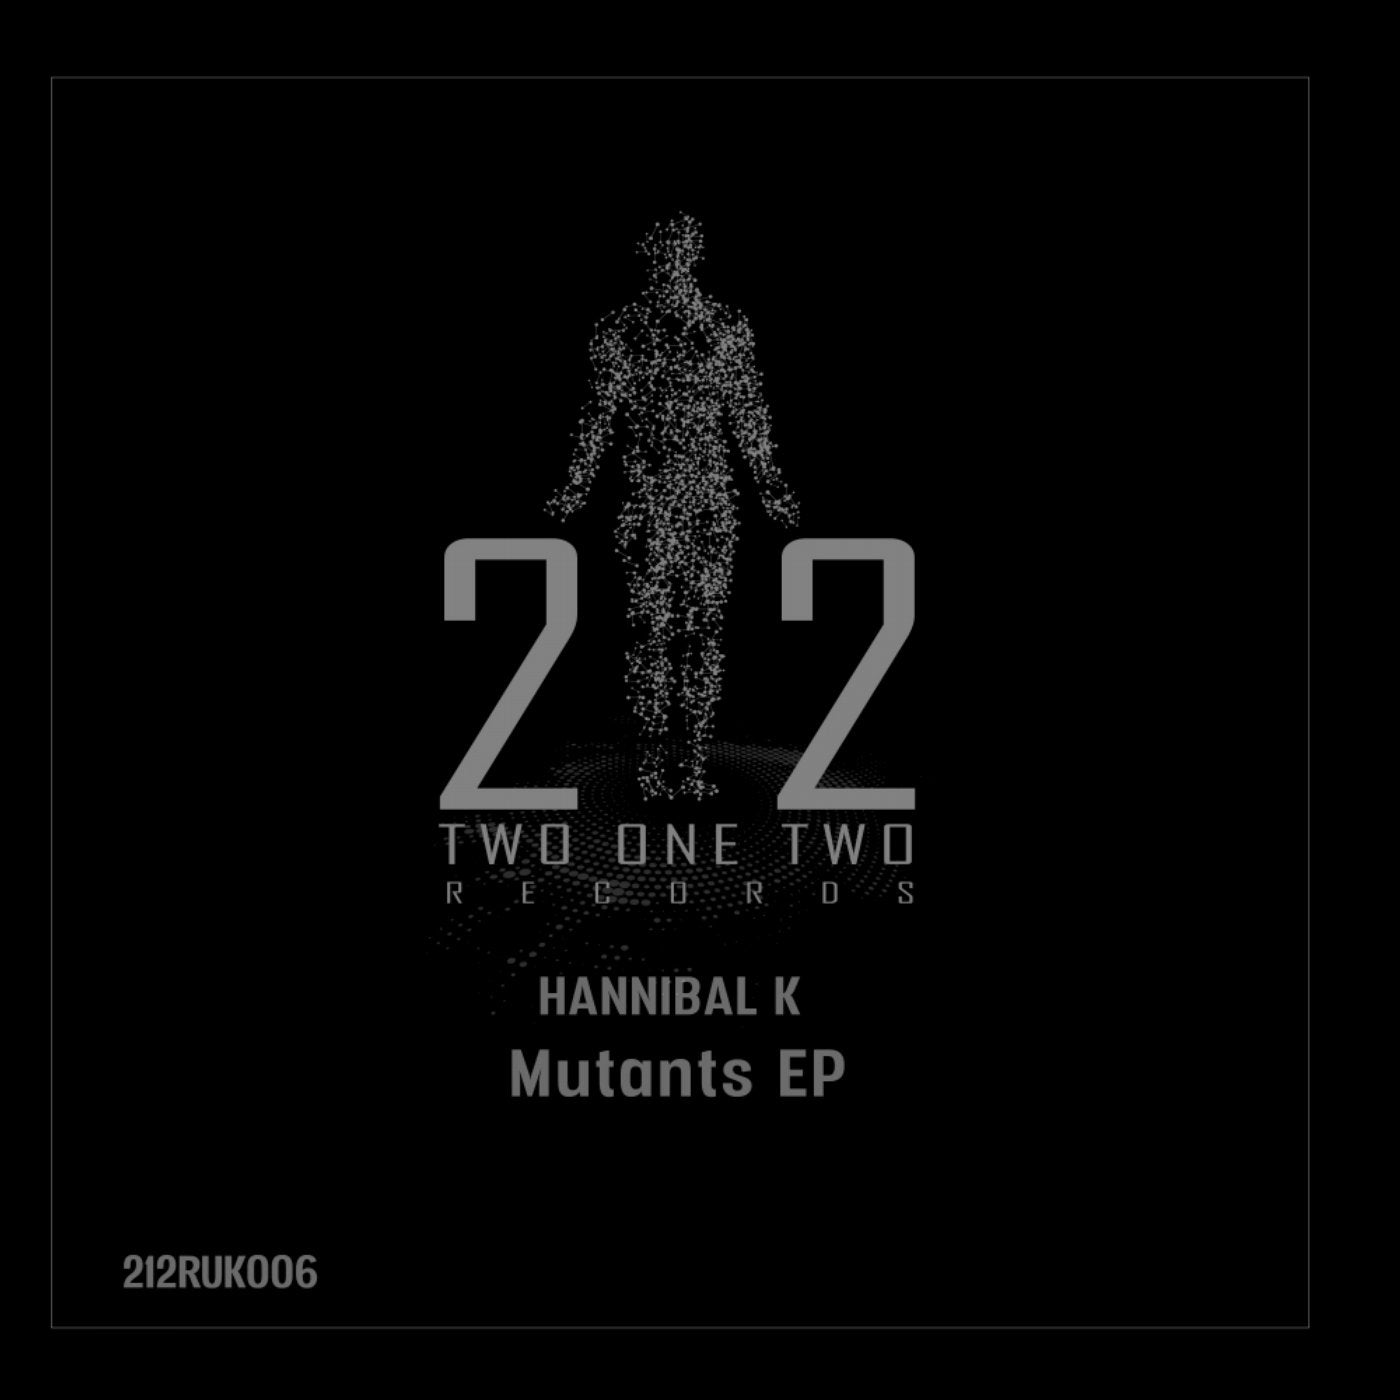 Mutants EP